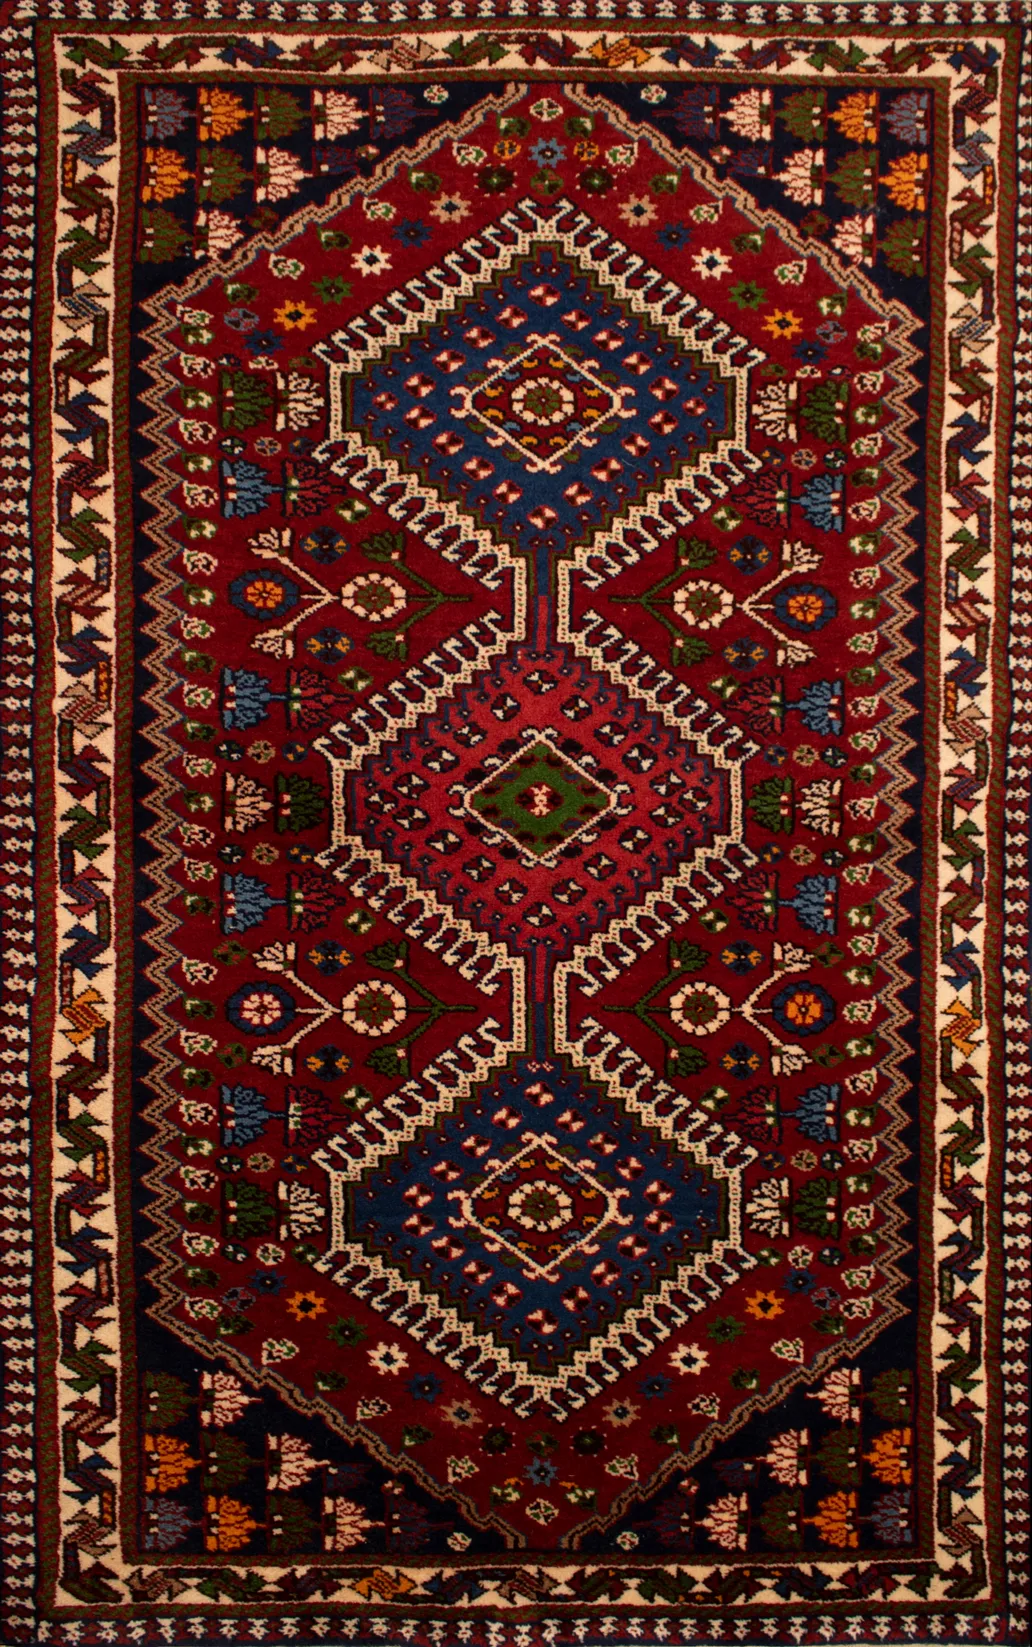 Authentic Shahreza Isfahan Wool Carpet